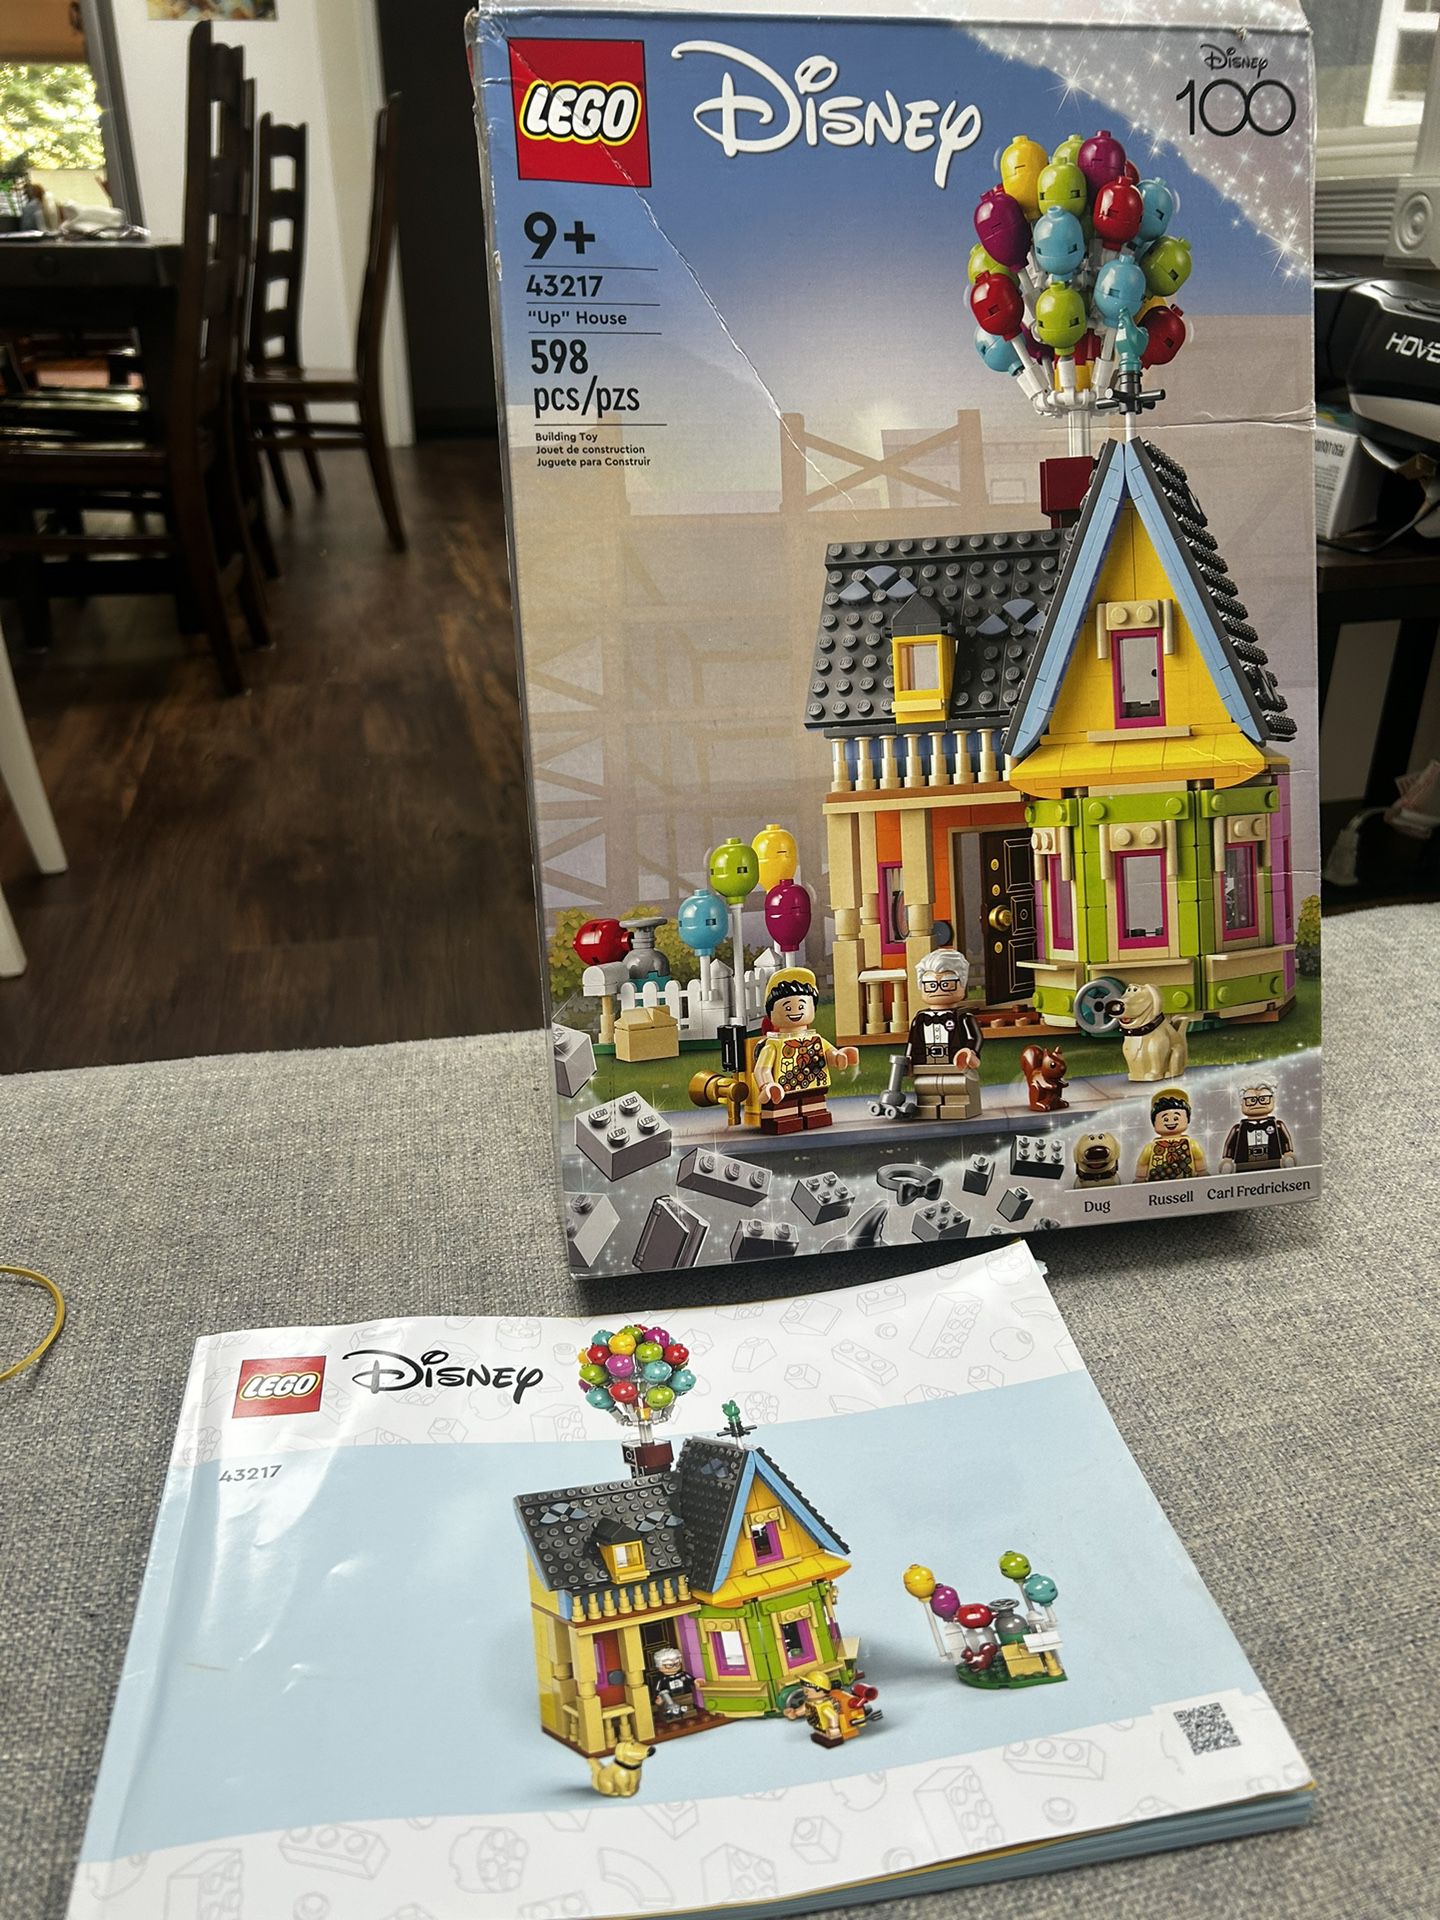 Disney Lego set, Up House #43217